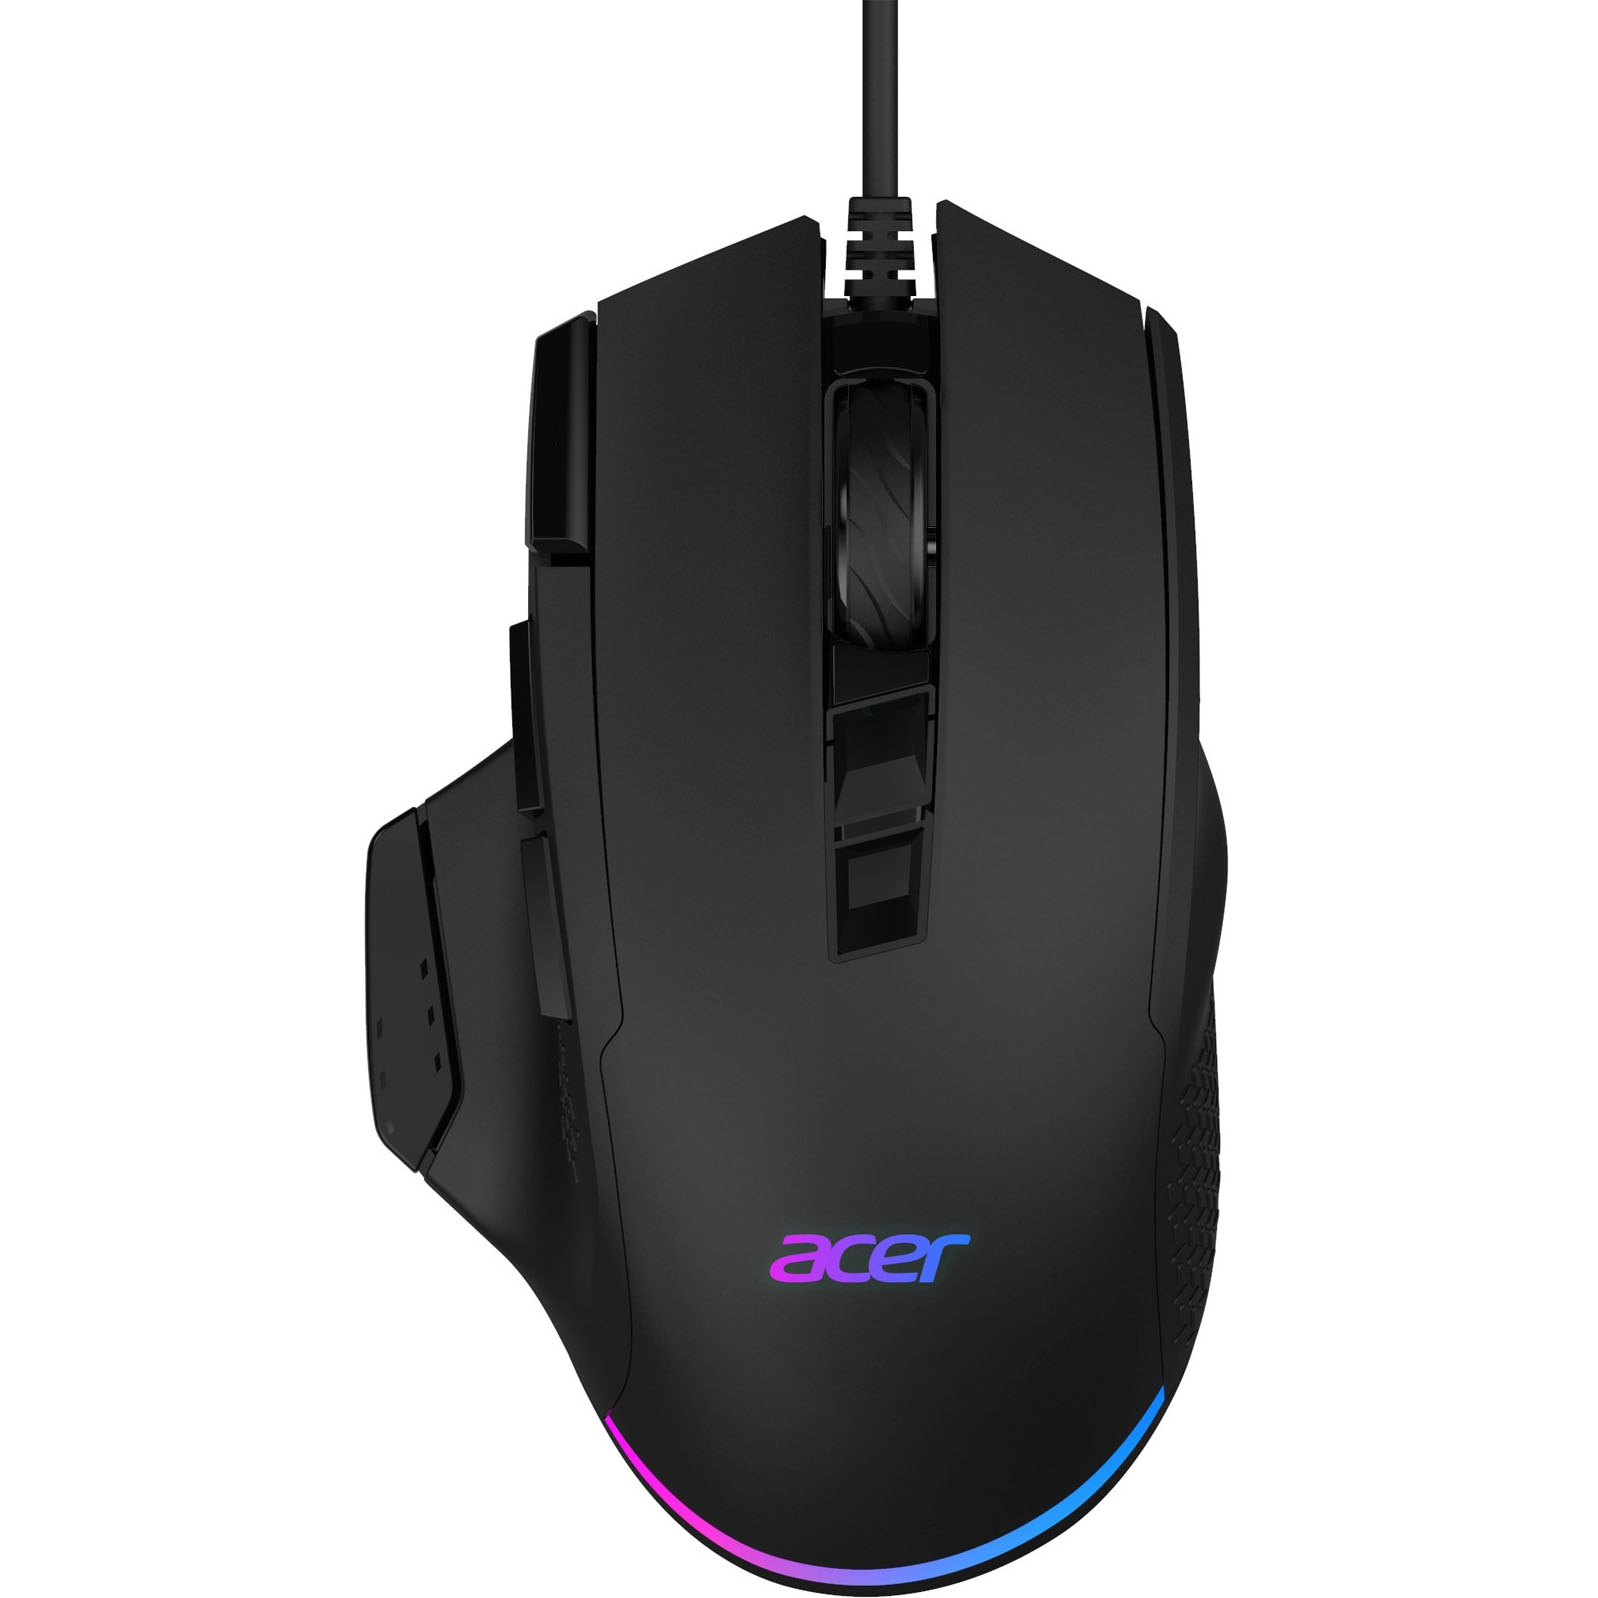 Компьютерная мышь Acer OMW180 черный цена и фото